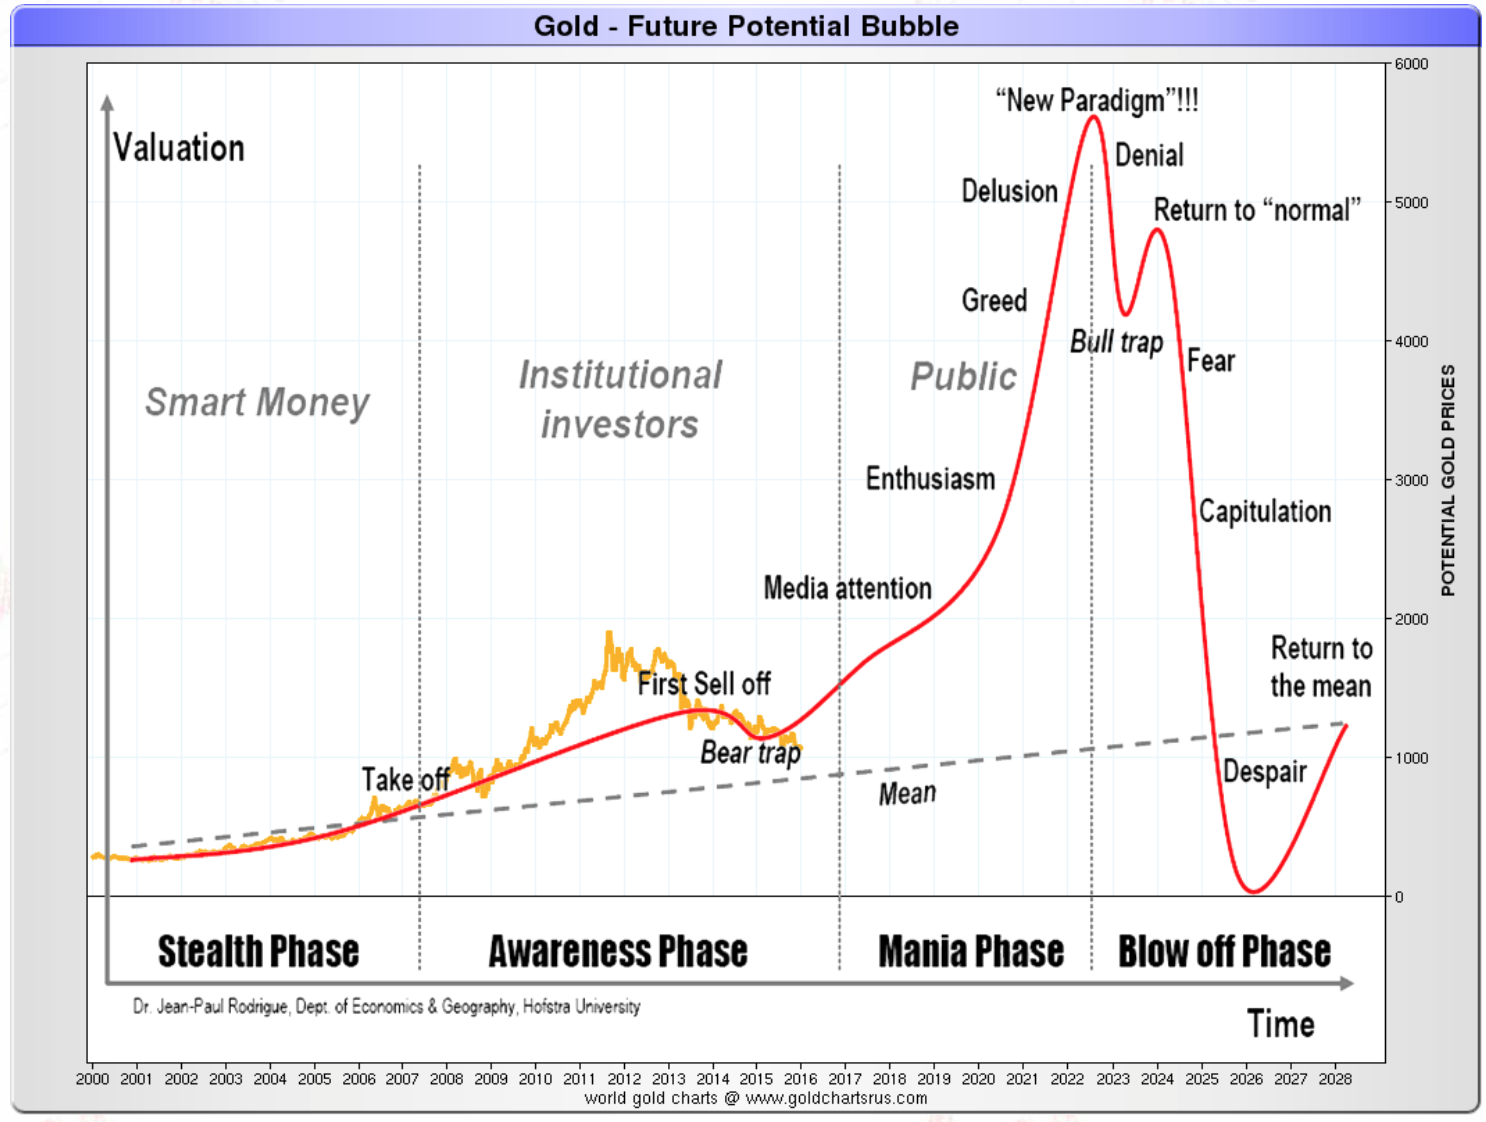 Une future hypothétique bulle sur l'or